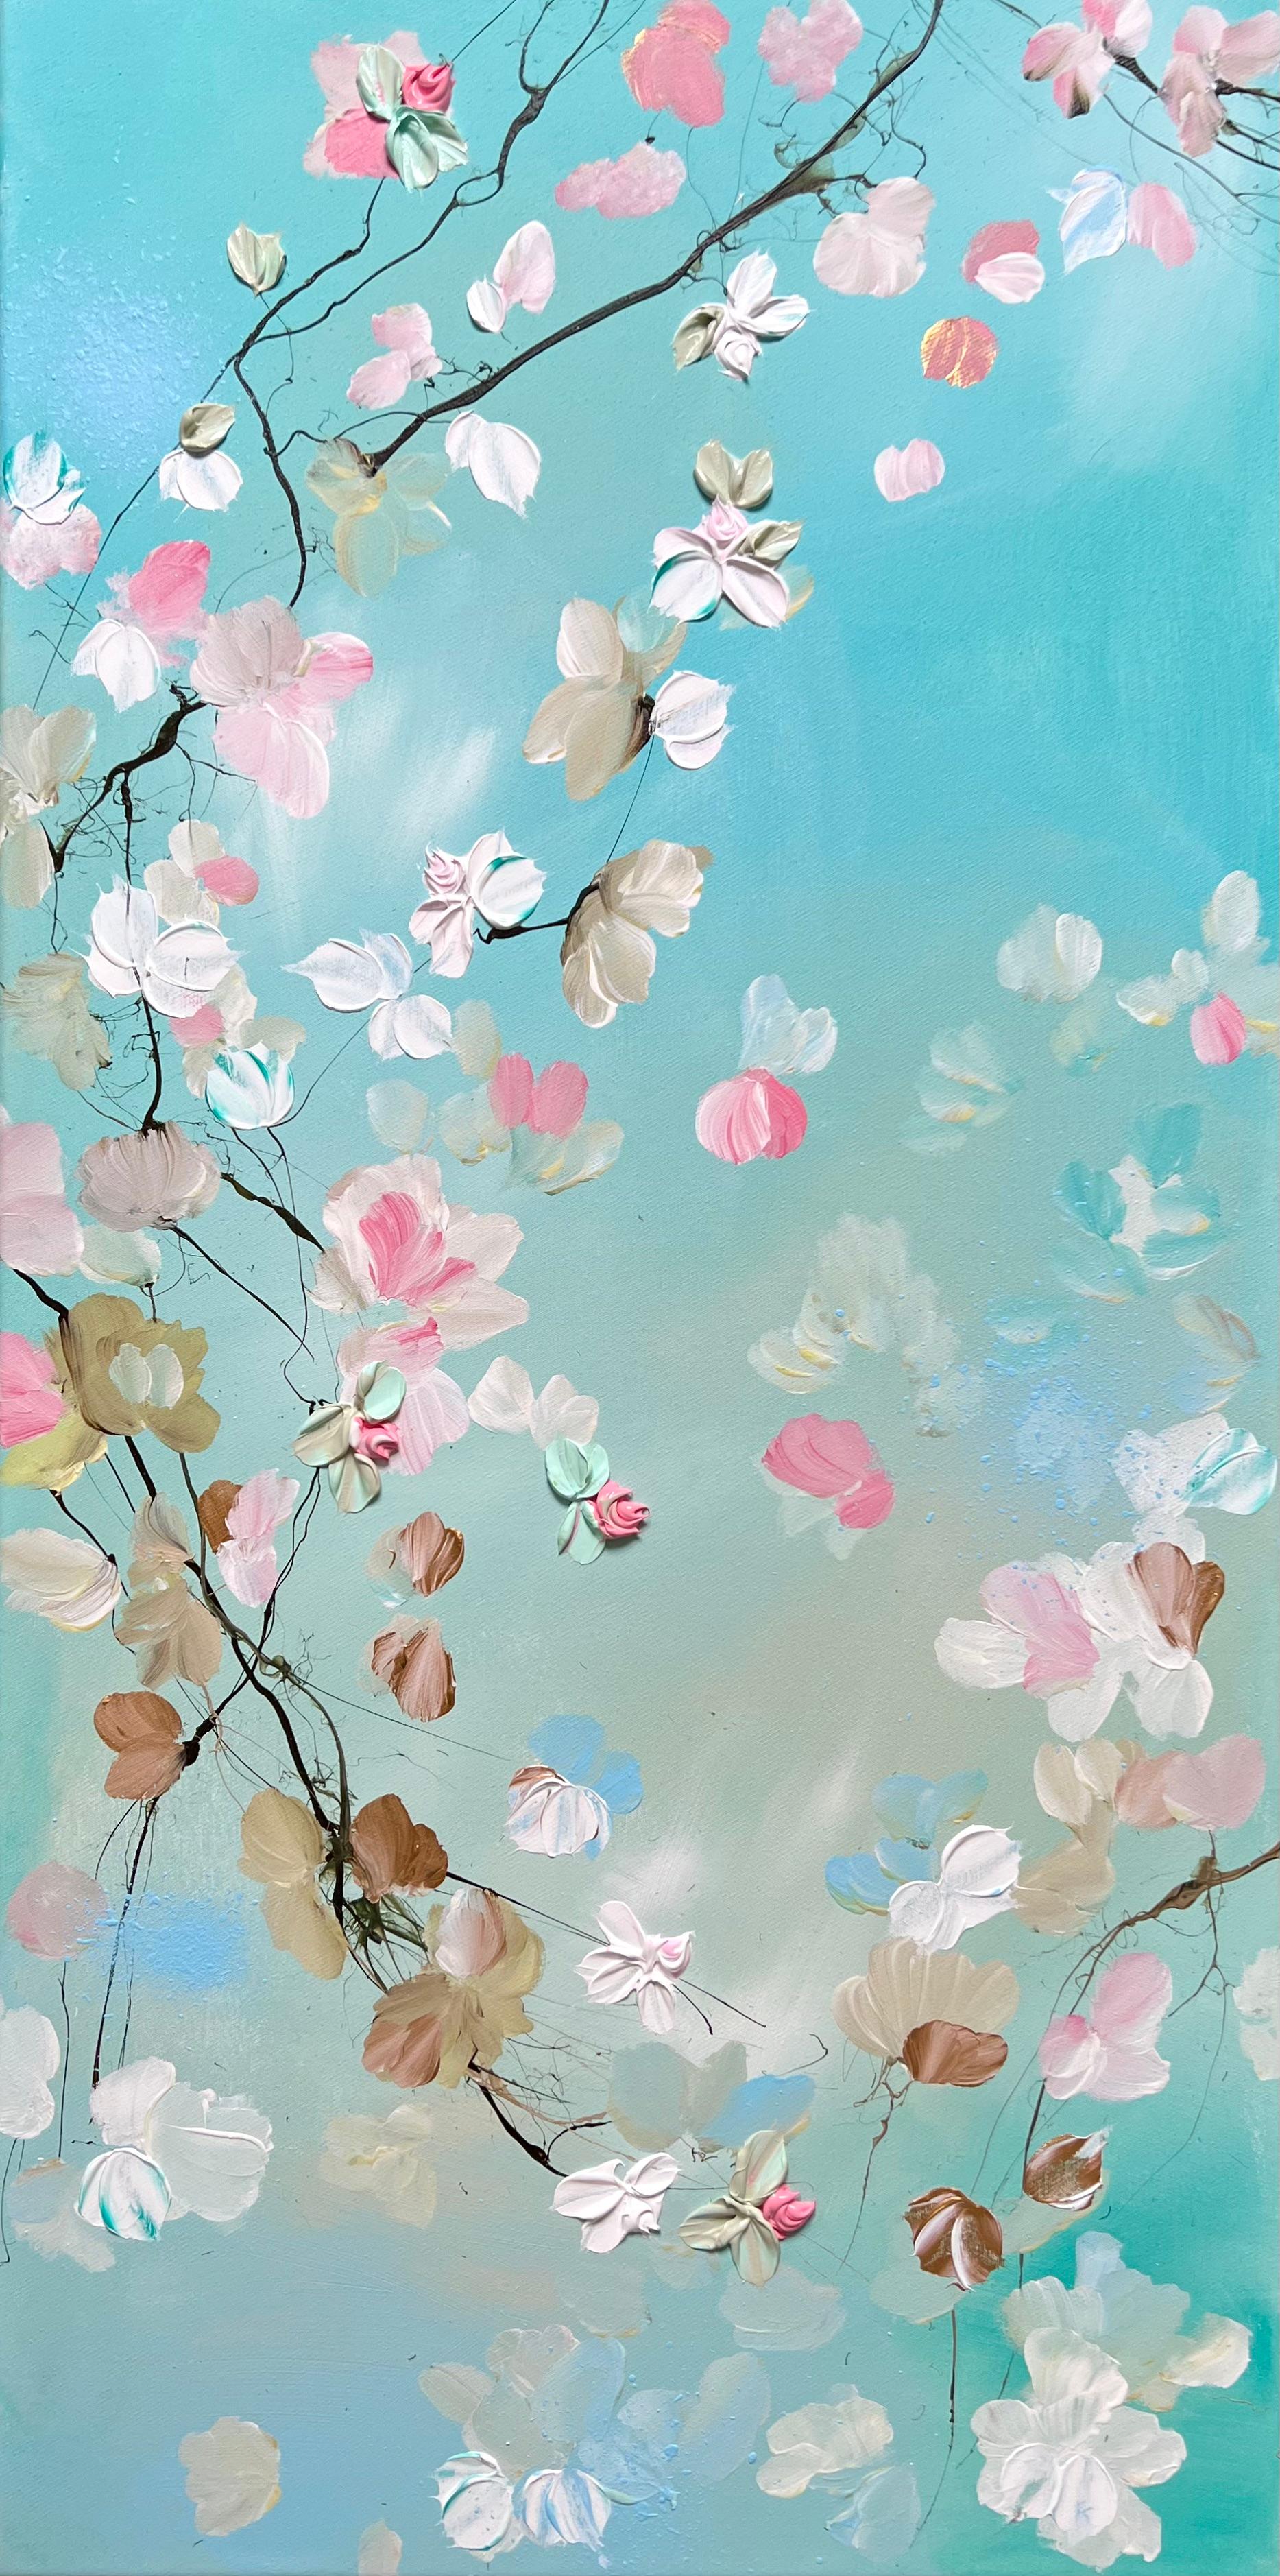 Interior Painting de Anastassia Skopp - "Obra de arte floral "FLOW